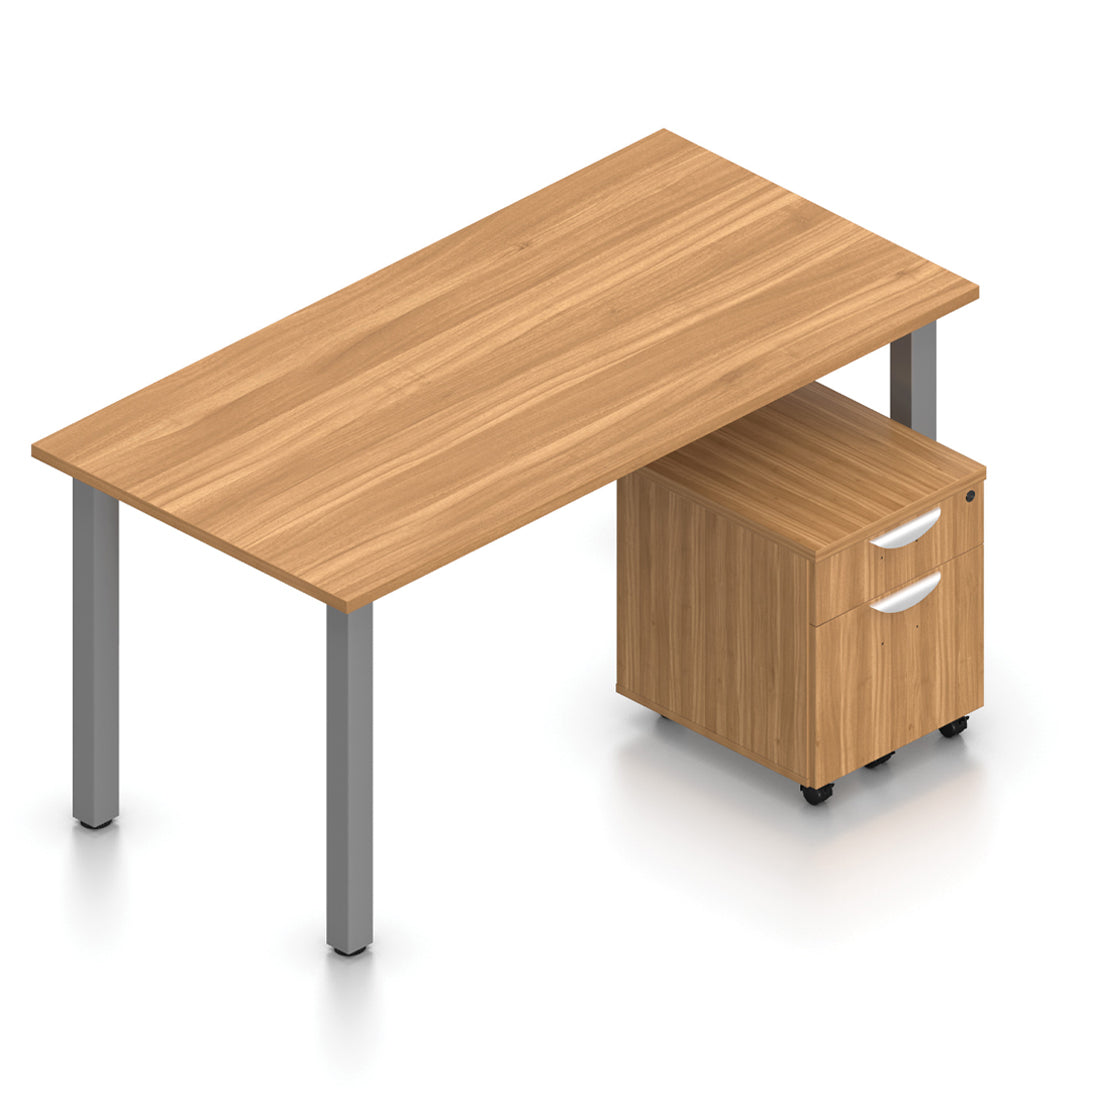 OTG 60” x 30” Rectangular Home Desk - Mobile Pedestal